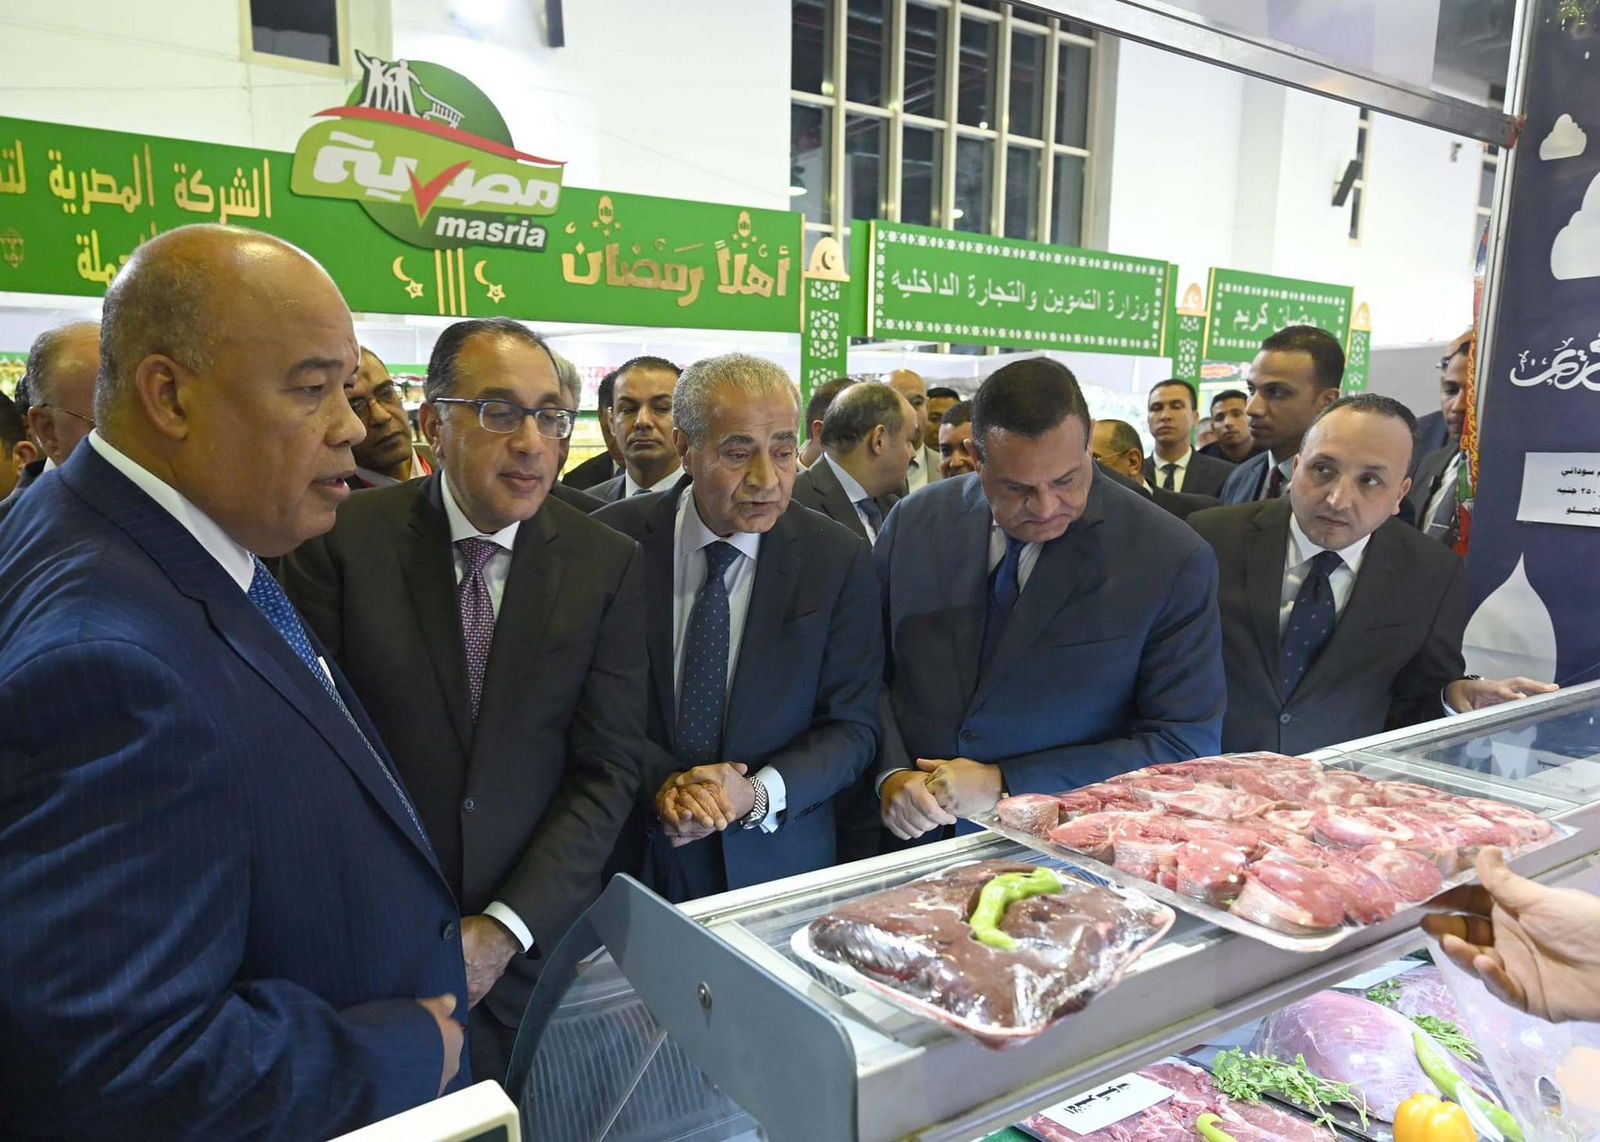 الدكتور مصطفى مدبولي رئيس مجلس الوزراء يتفقد معرض أهلا رمضان الرئيسي بمدينة نصر